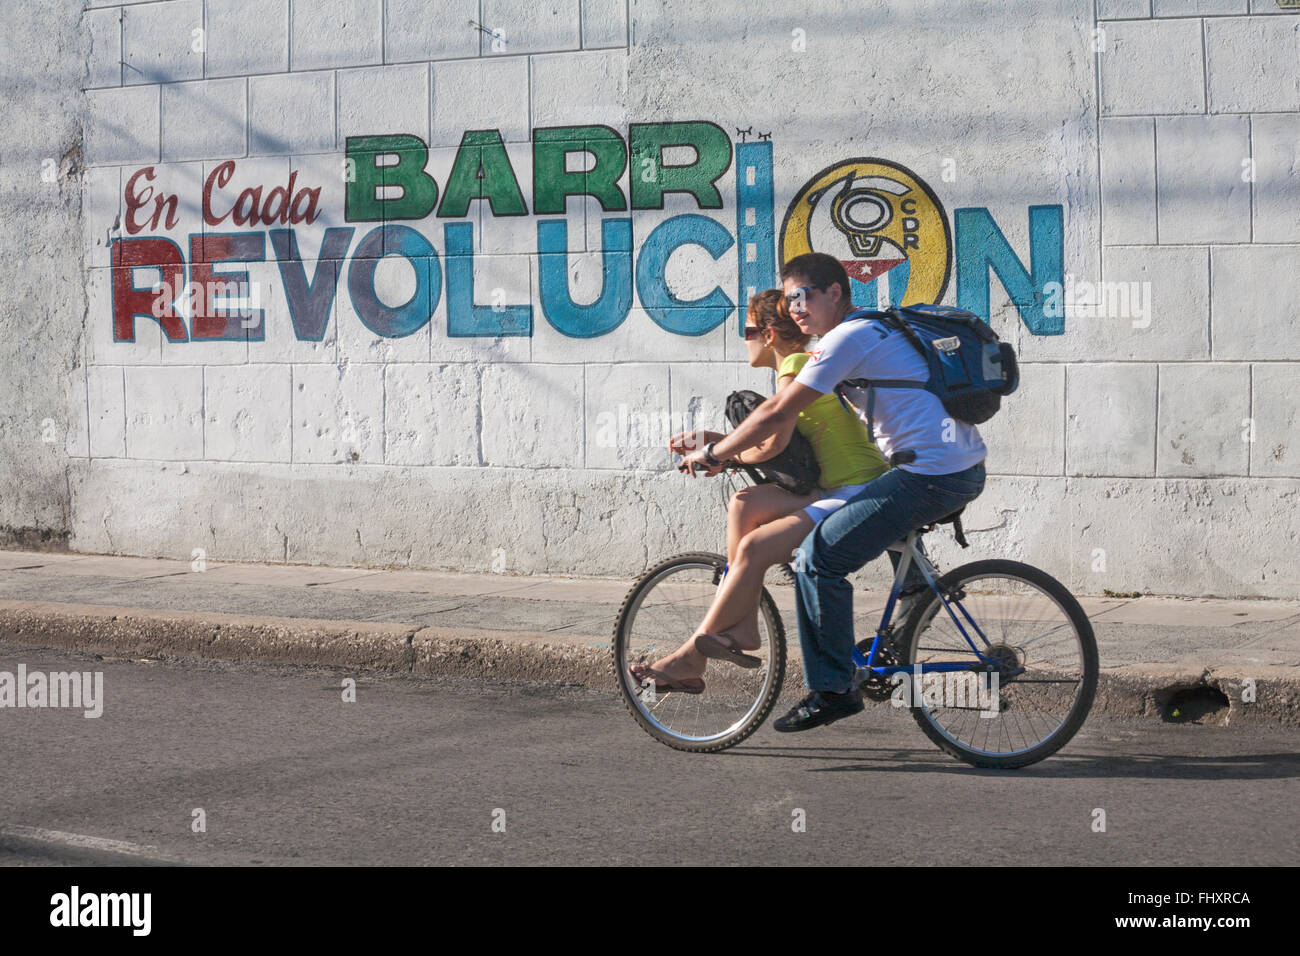 La vita quotidiana a Cuba - Coppia giovane equitazione Bicicletta oltre la parete con en cada barr revolucion slogan a Cienfuegos, Cuba Foto Stock